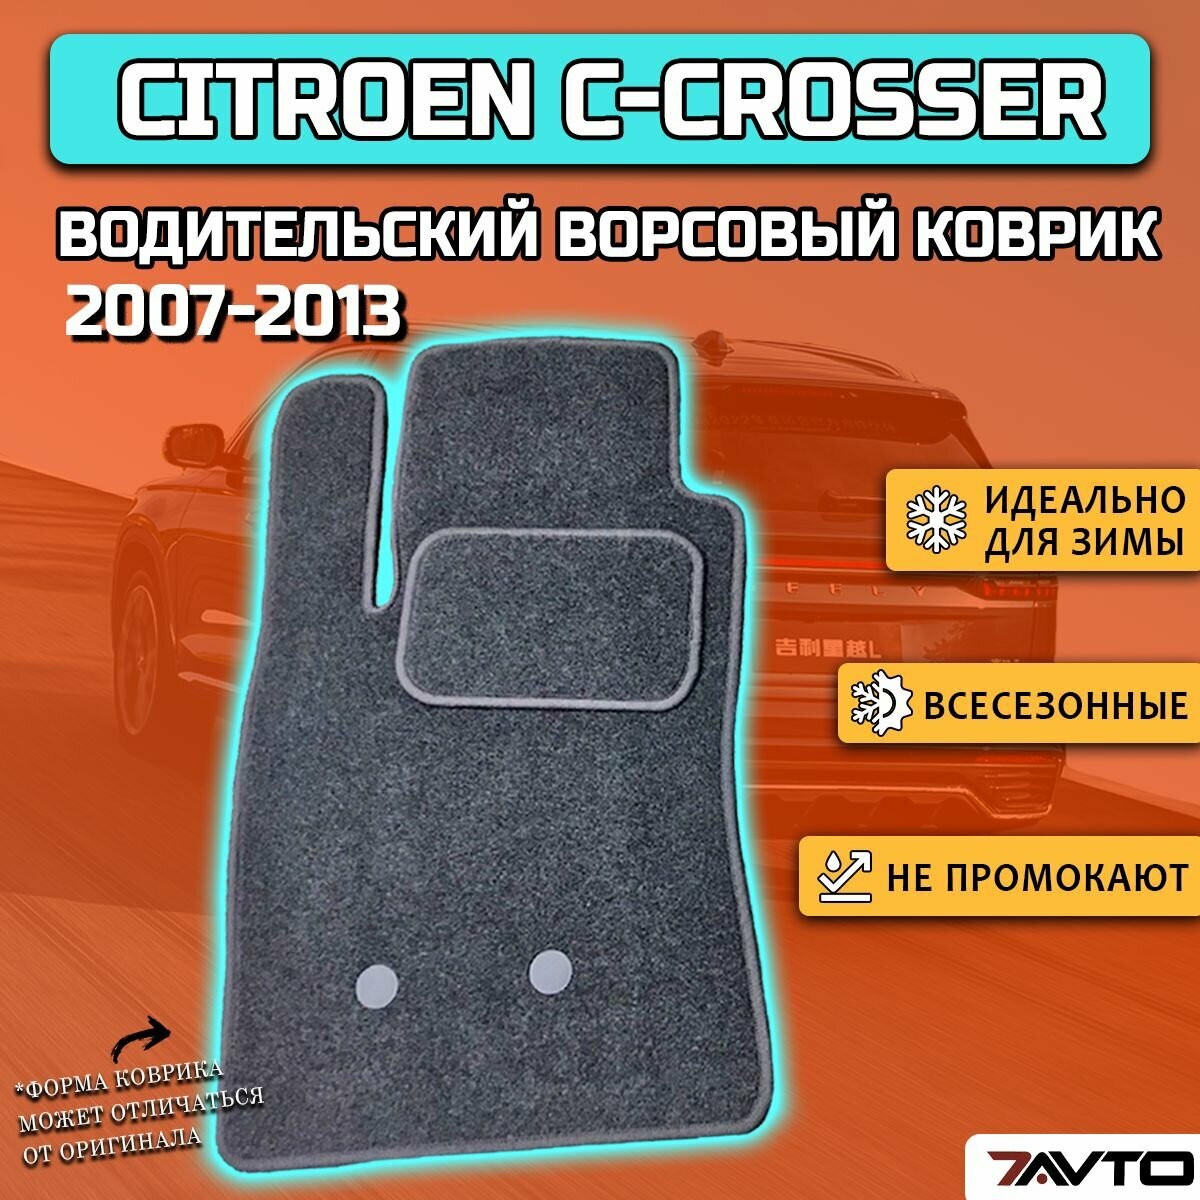 Водительский ворсовый коврик ECO на Citroen C-Crosser 2007-2013